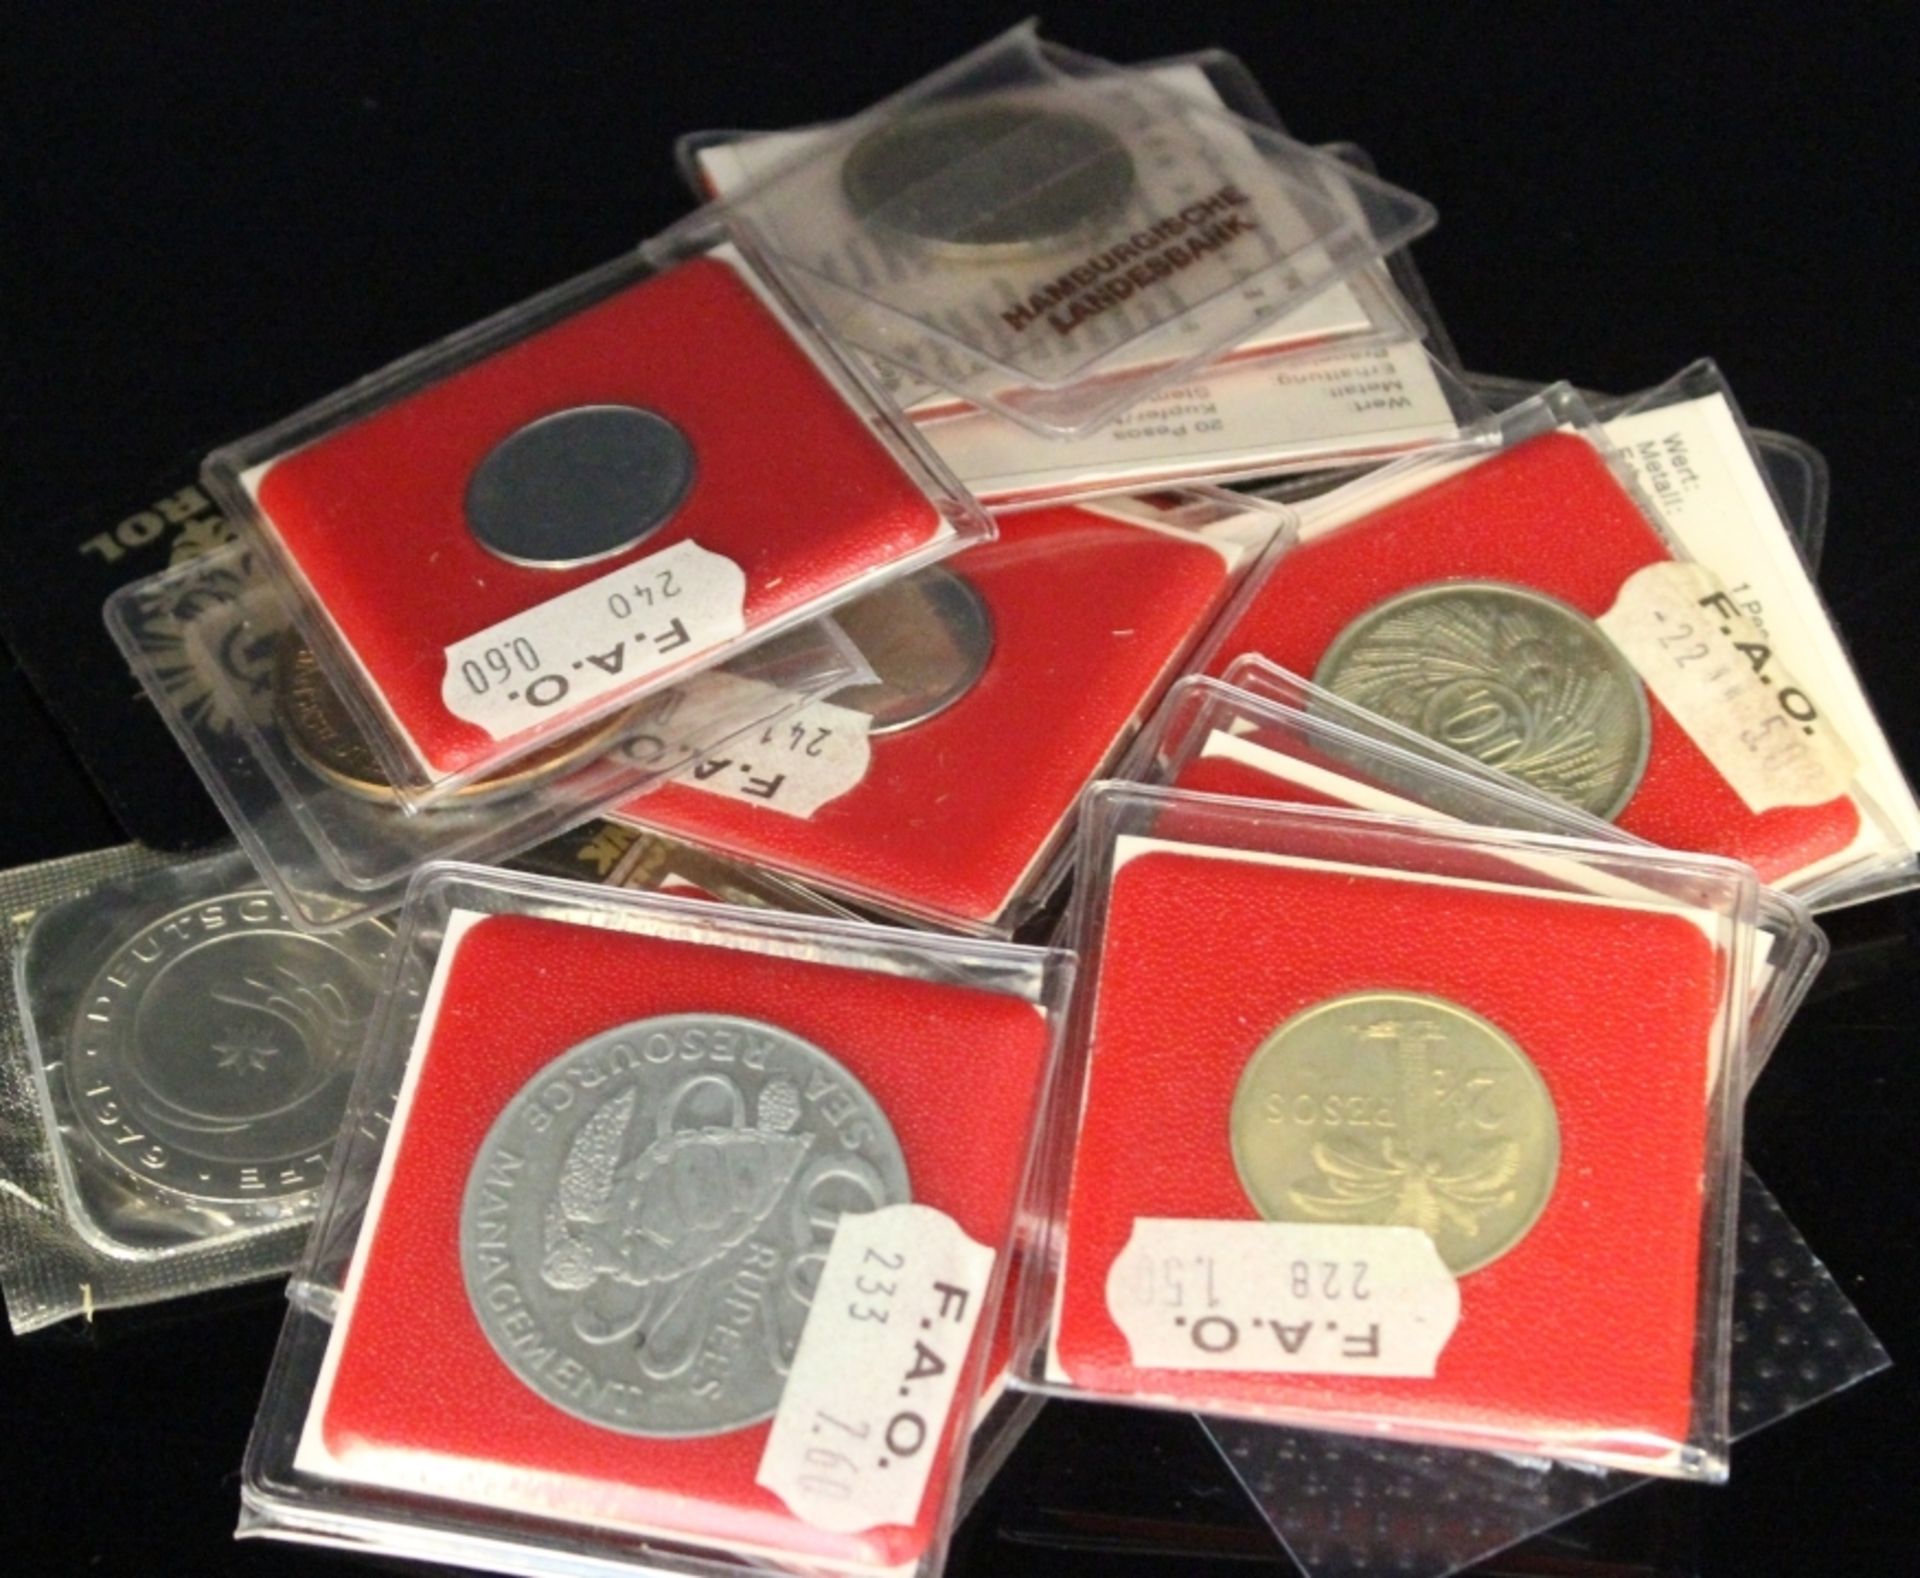 Lot von 20 Münzen und Medaillen alle Welt in Silber, Nickel und Kupfer, Escudos, Pesos, Centavos,